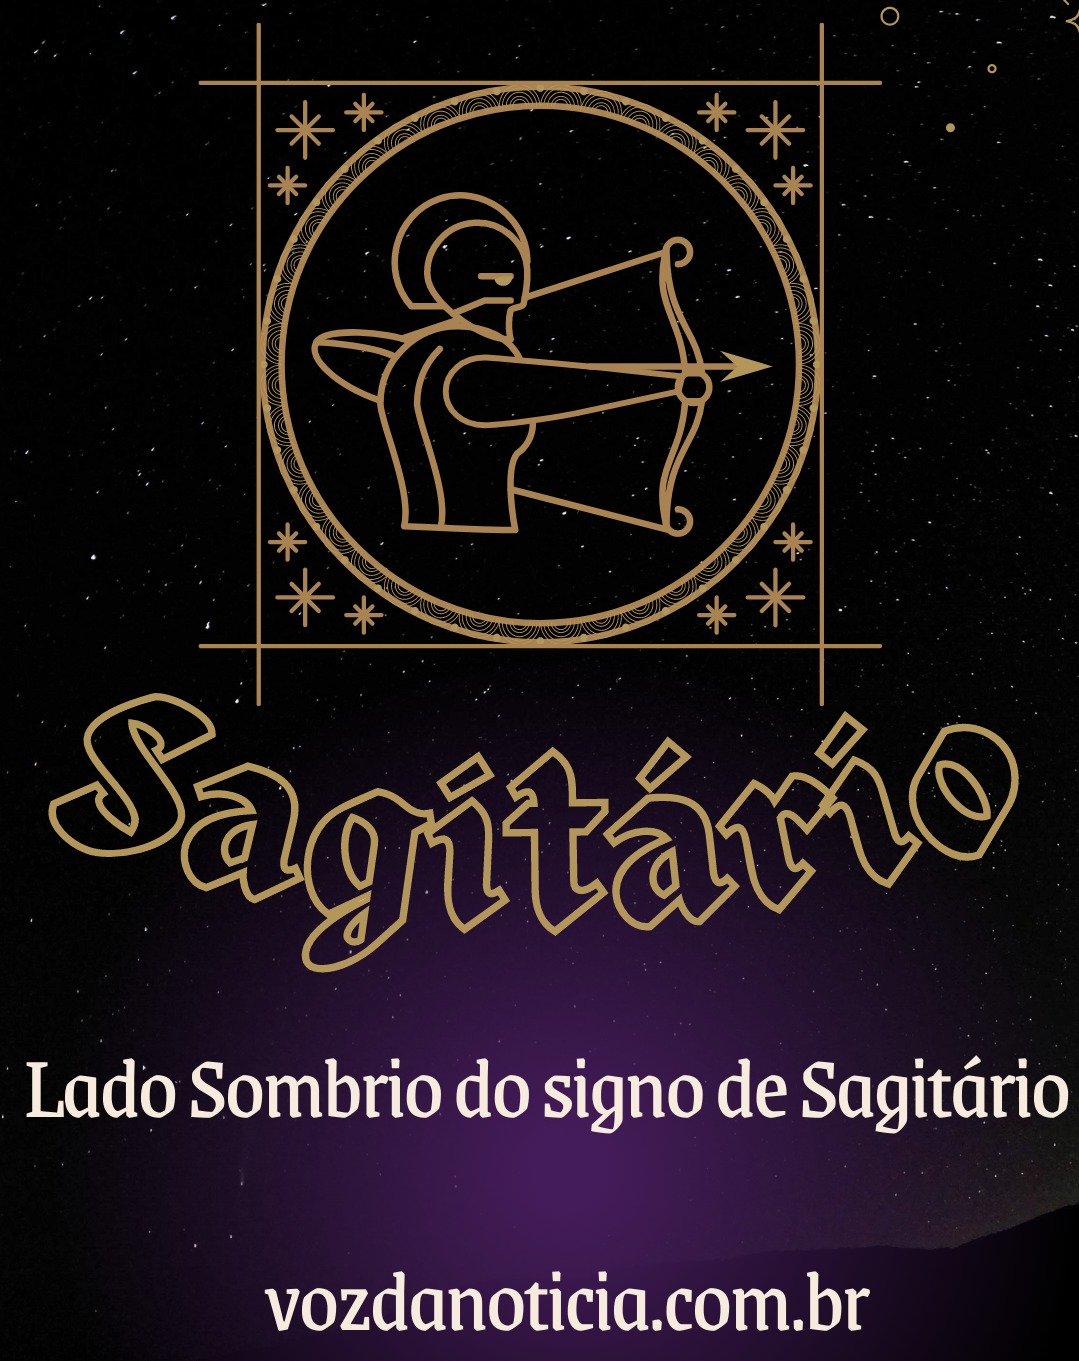 Lado Sombrio do signo de Sagitario

vozdanoticia.com.br - Lado Sombrio do signo de Sagitario

vozdanoticia.com.br